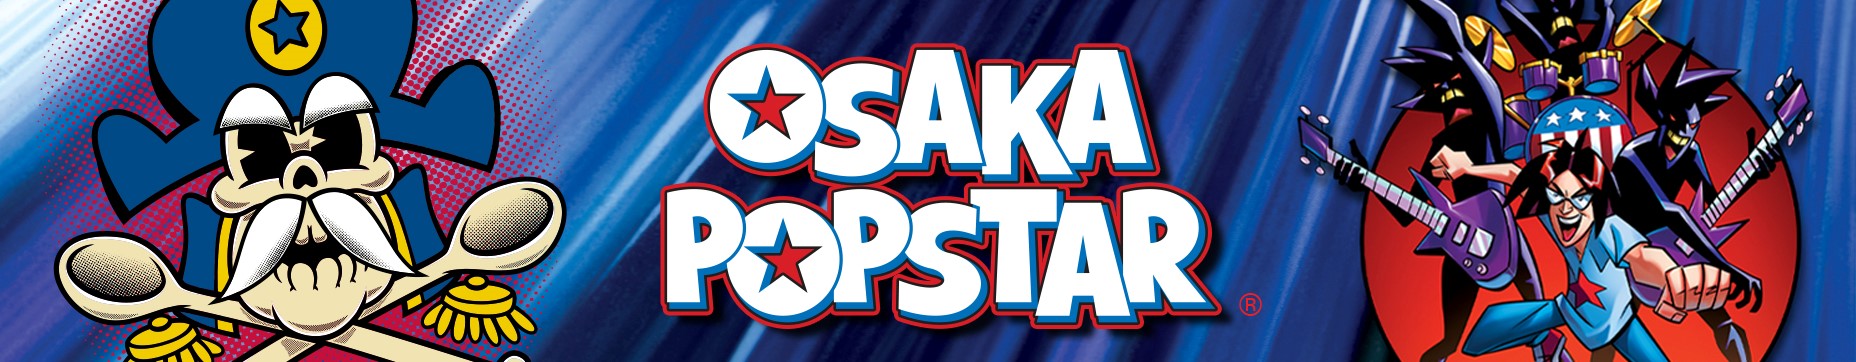 Osaka Popstar logo